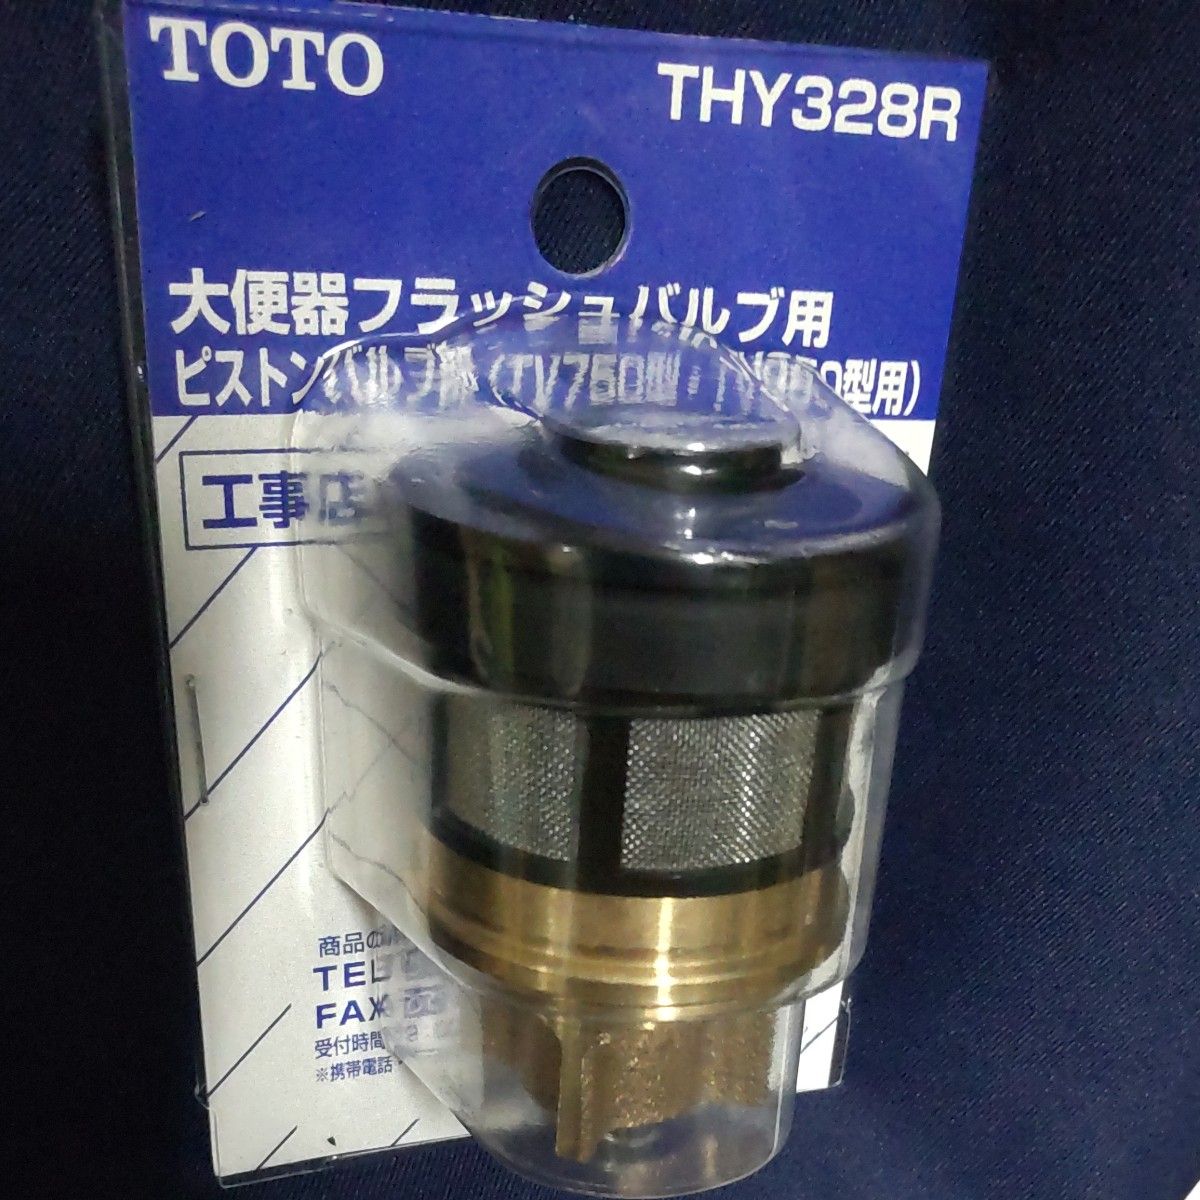 TOTO 大便器フラッシュバルブ用ピストンバルブ部 THY328R